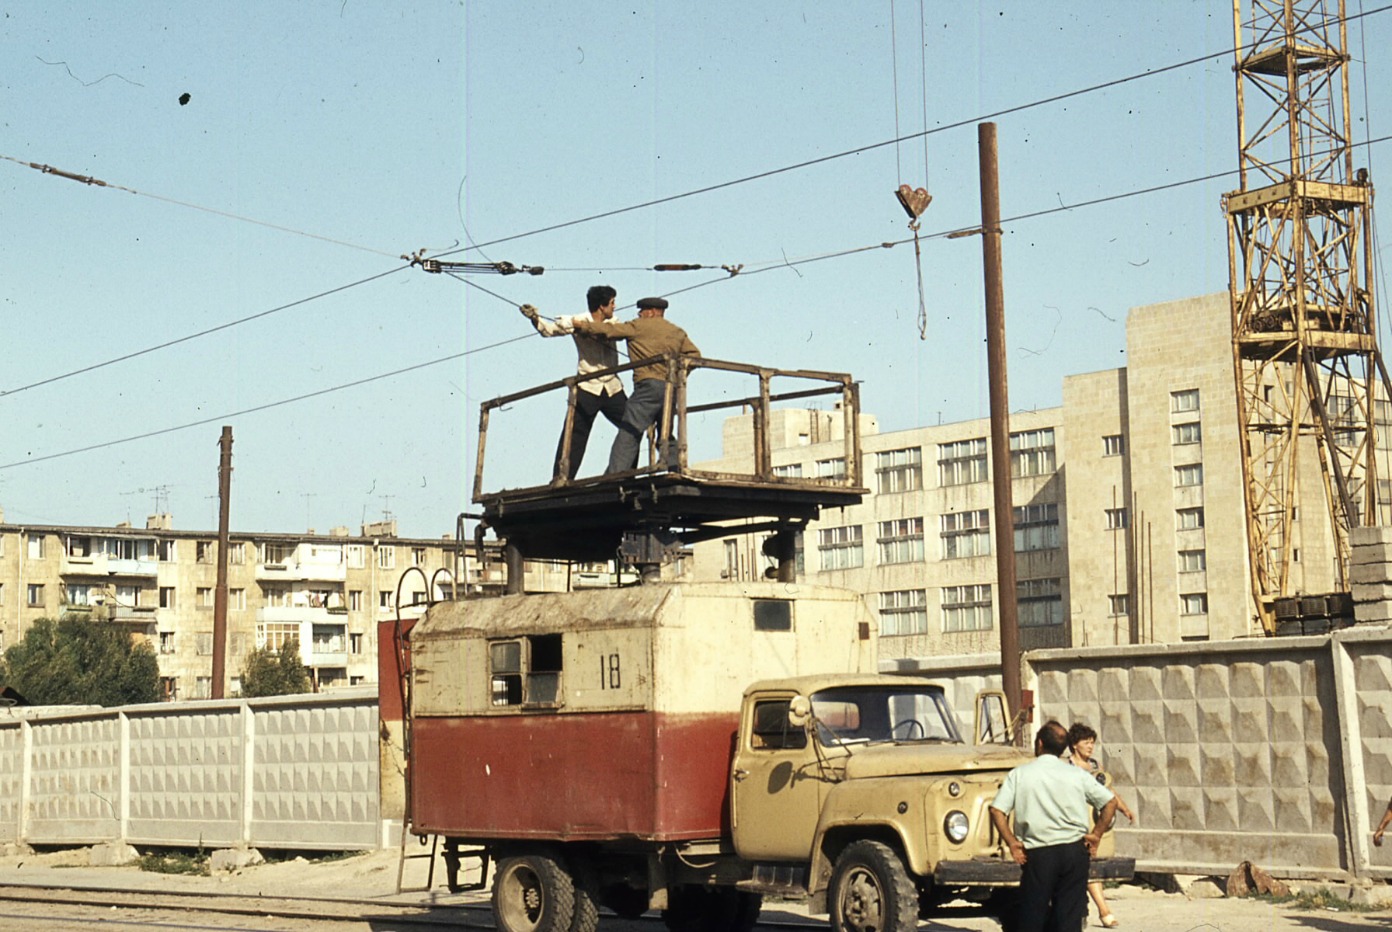 Баку — Старые фотографии (трамвай)